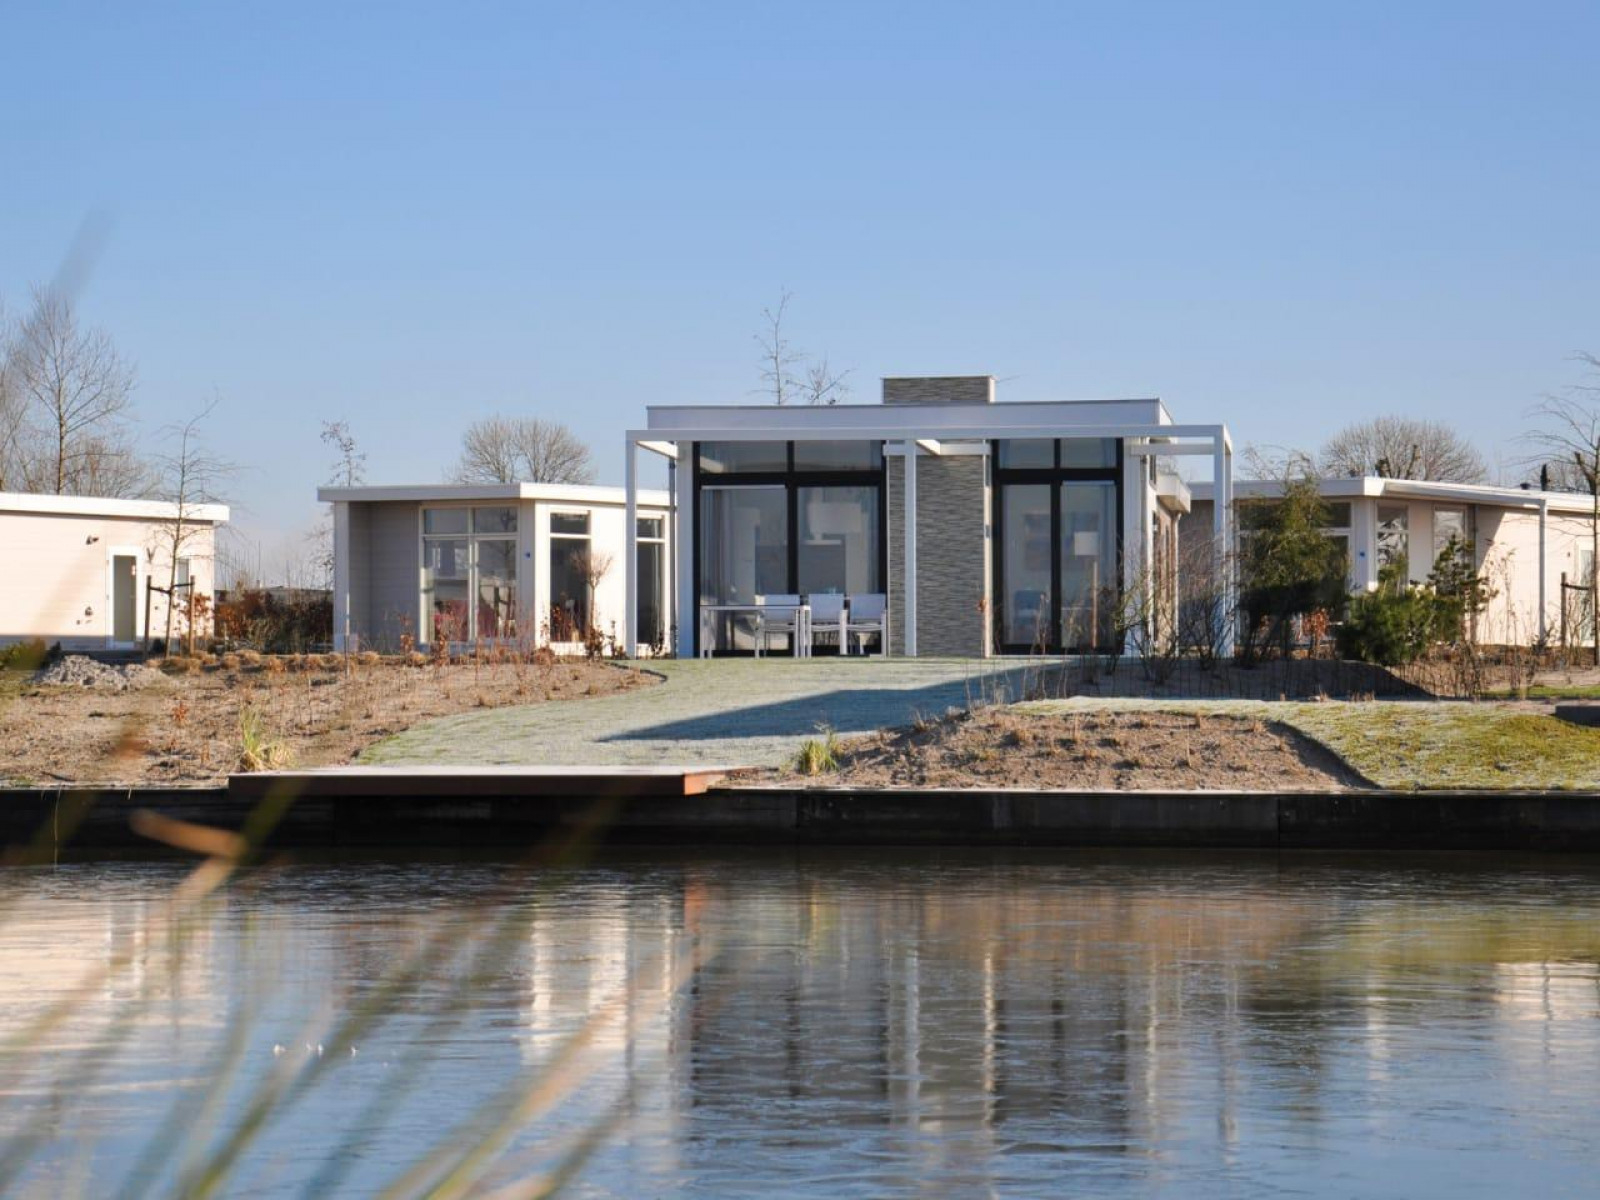 Luxe 6 persoons chalet in waterrijk gebied nabij Nijmegen - Nederland - Europa - Linden